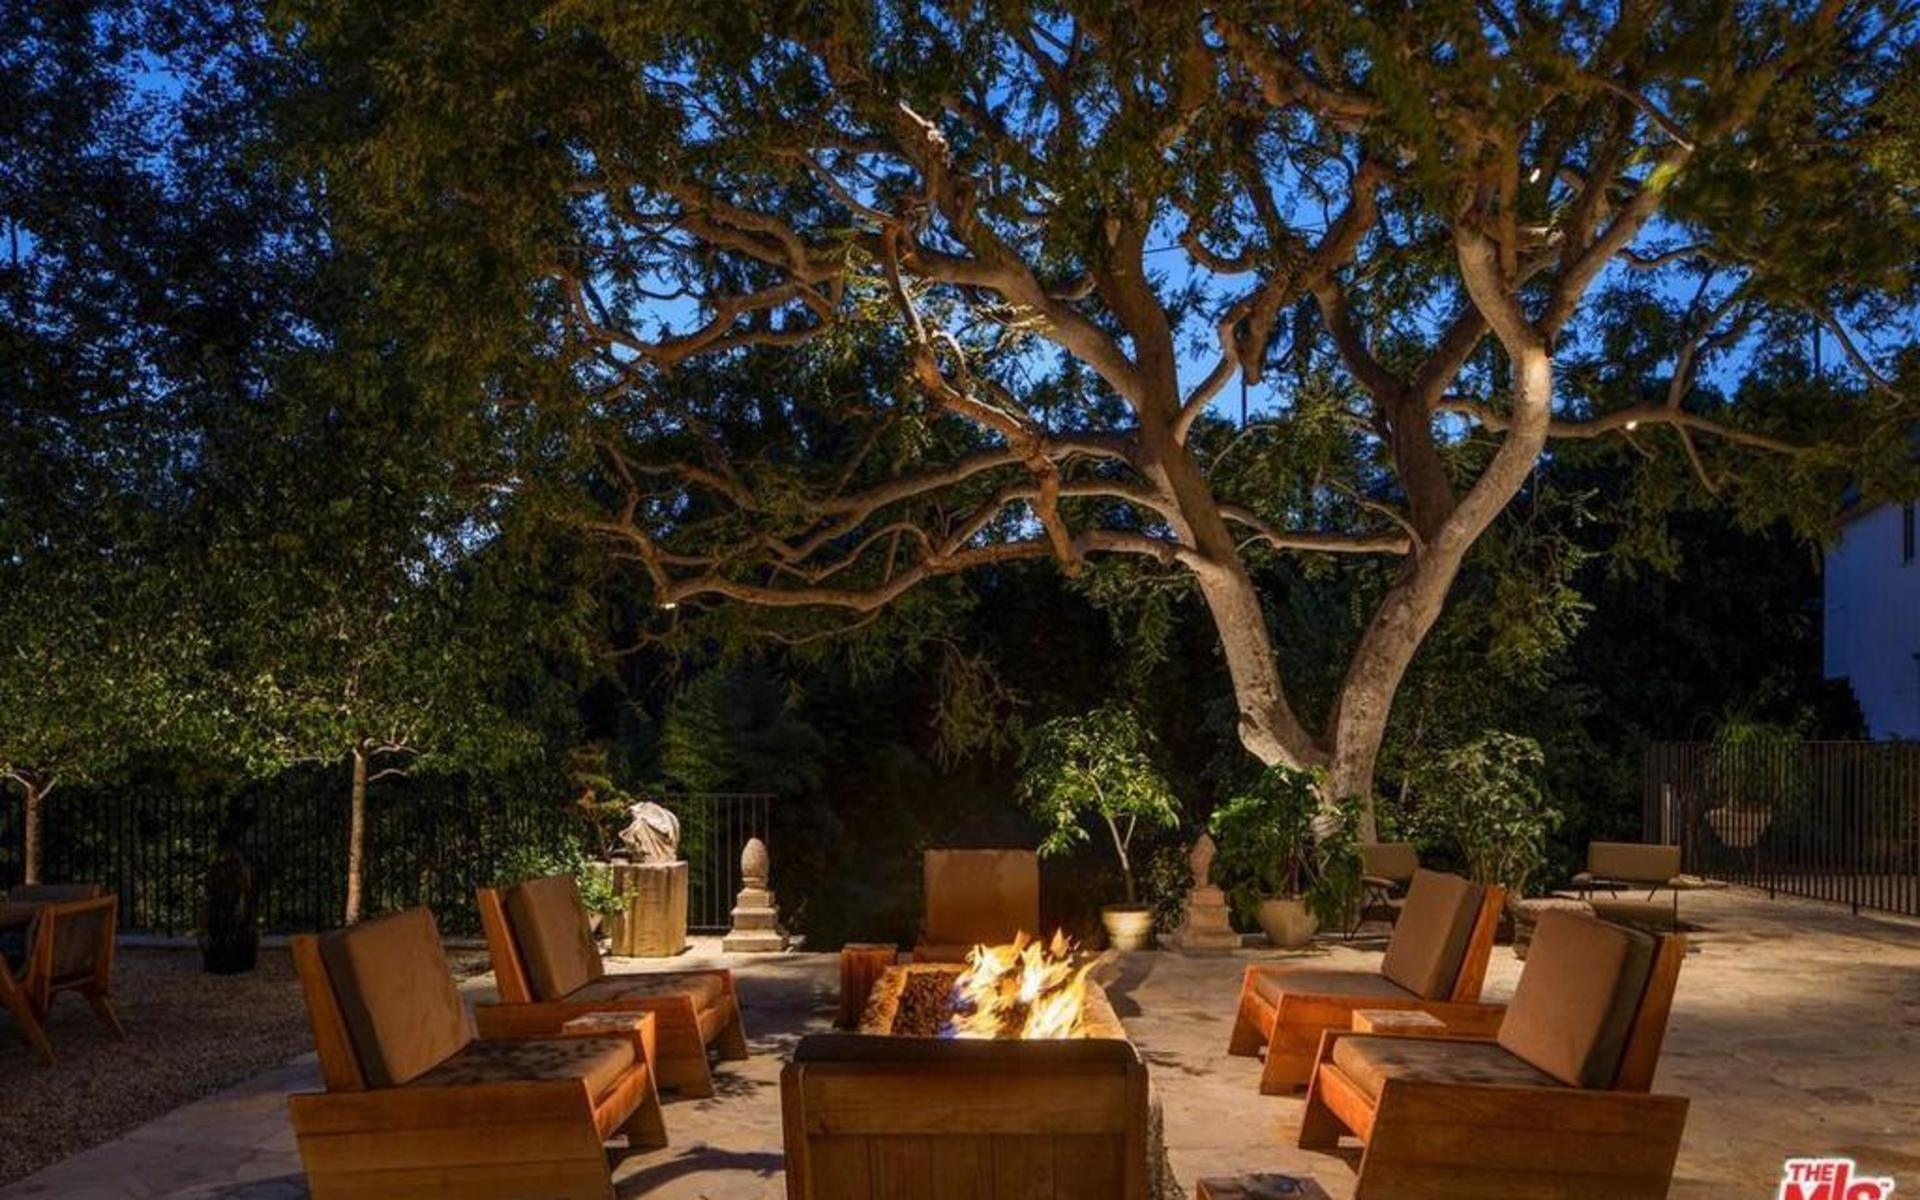 Programledaren Ellen DeGeneres lade ut sitt hus i Beverly Hills till försäljning under året. Ett hus köpt av Adam Levine i Maroon 5. Huset är på 1 000 kvadratmeter.